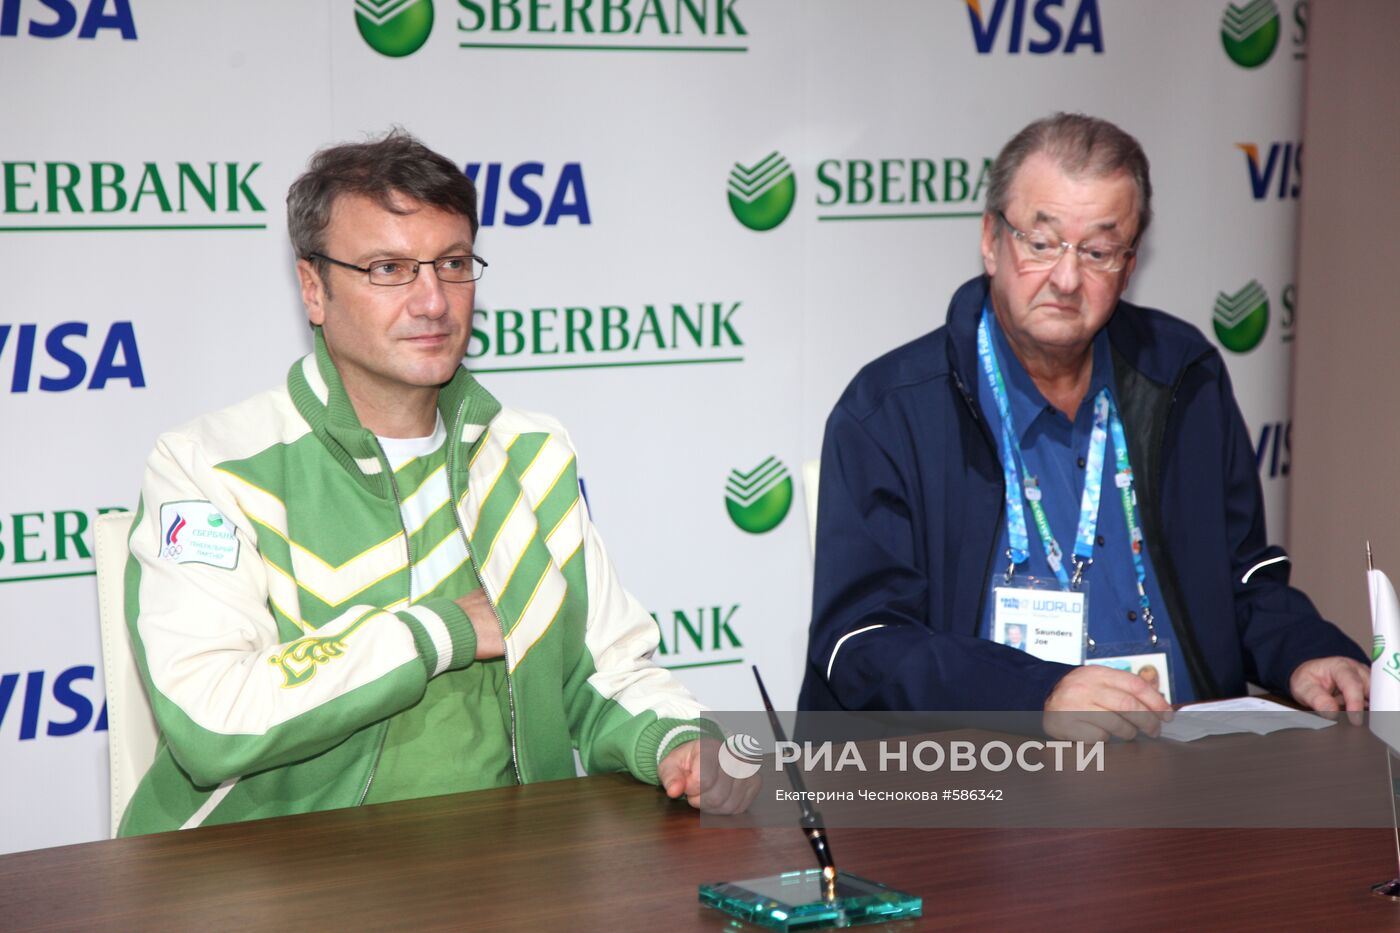 Сбербанк РФ и Visa подписали соглашение о сотрудничестве